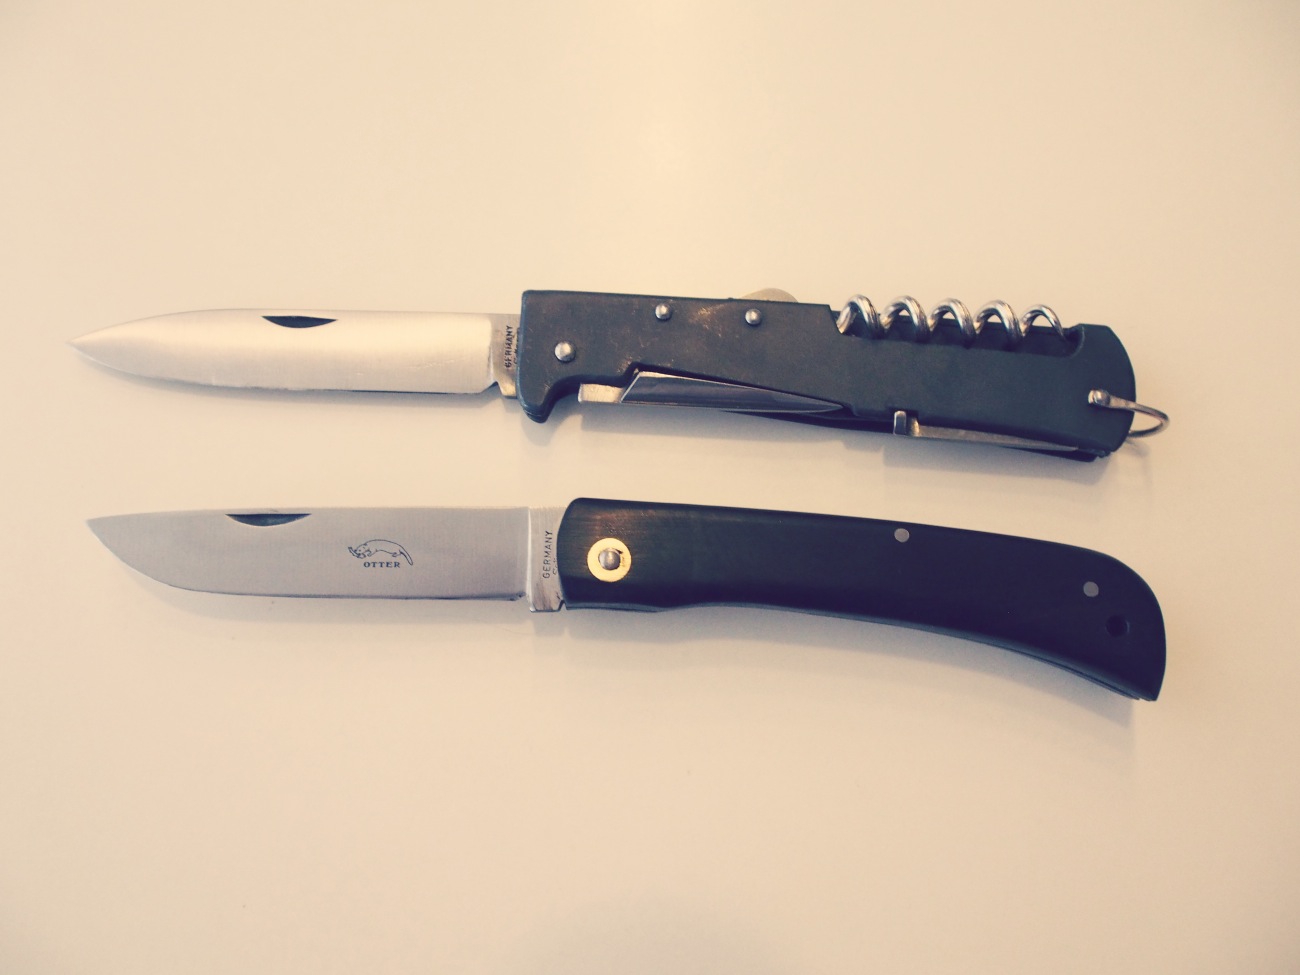 Otter-Messer